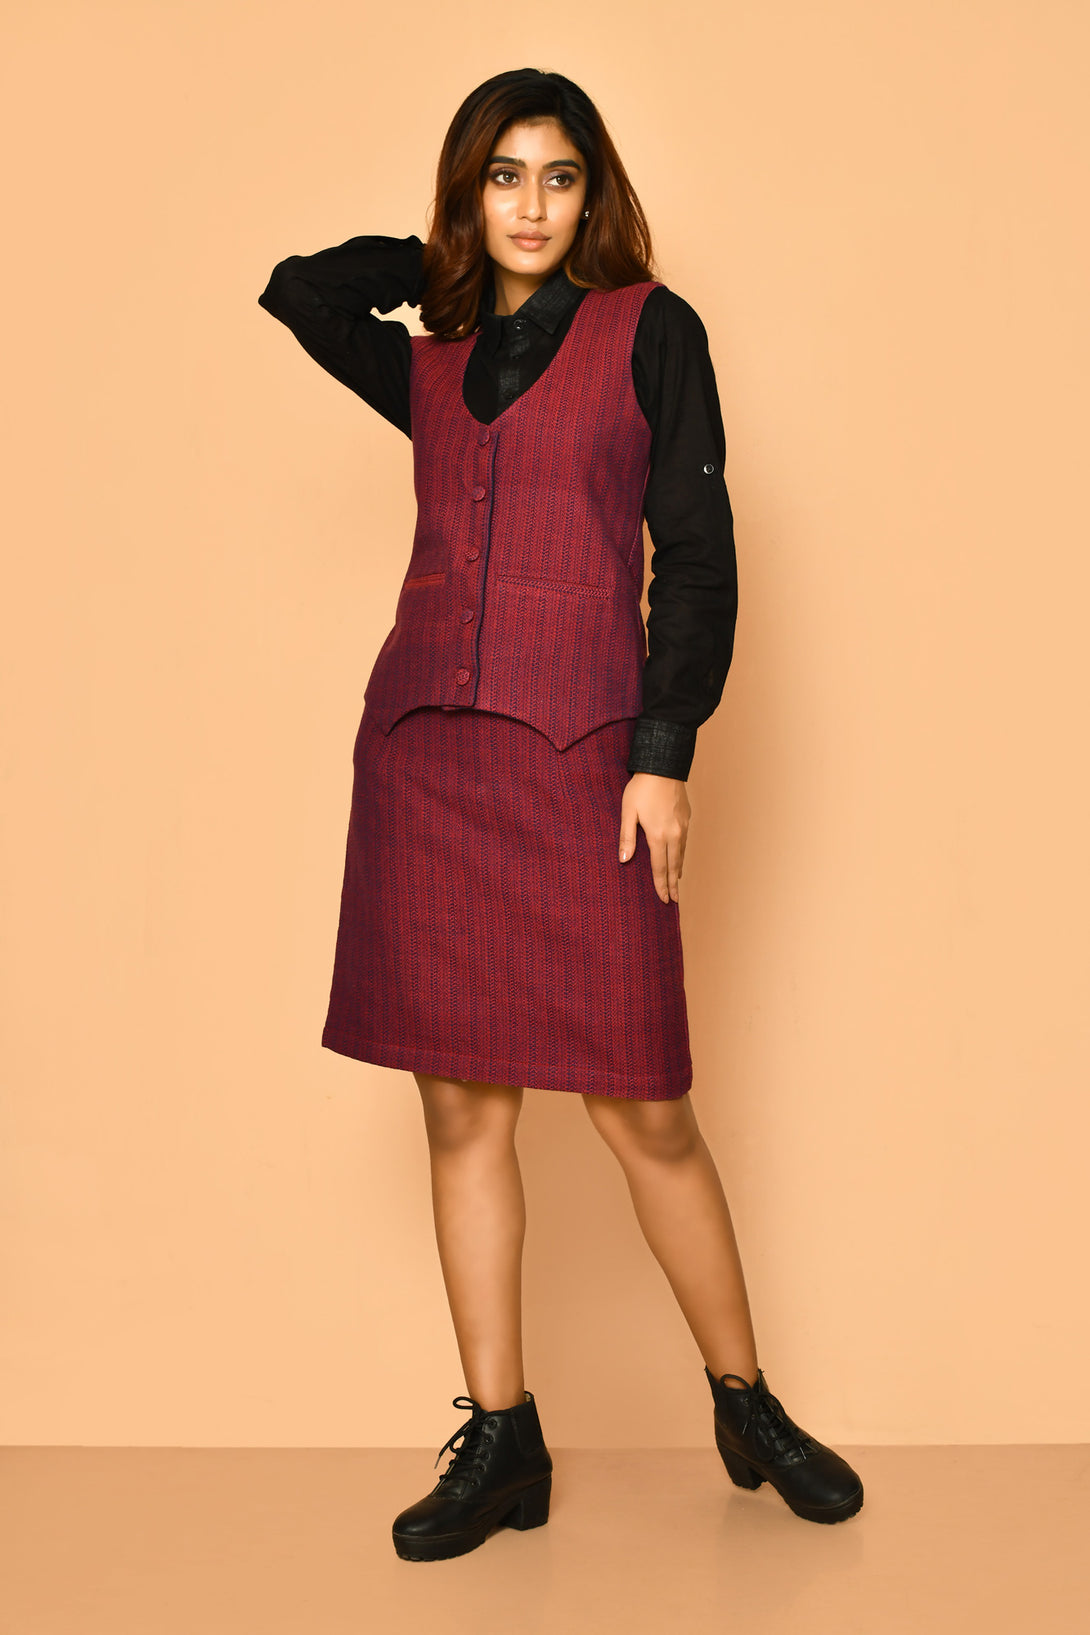 Buy best women's corporate wear handloom cotton co-ord set